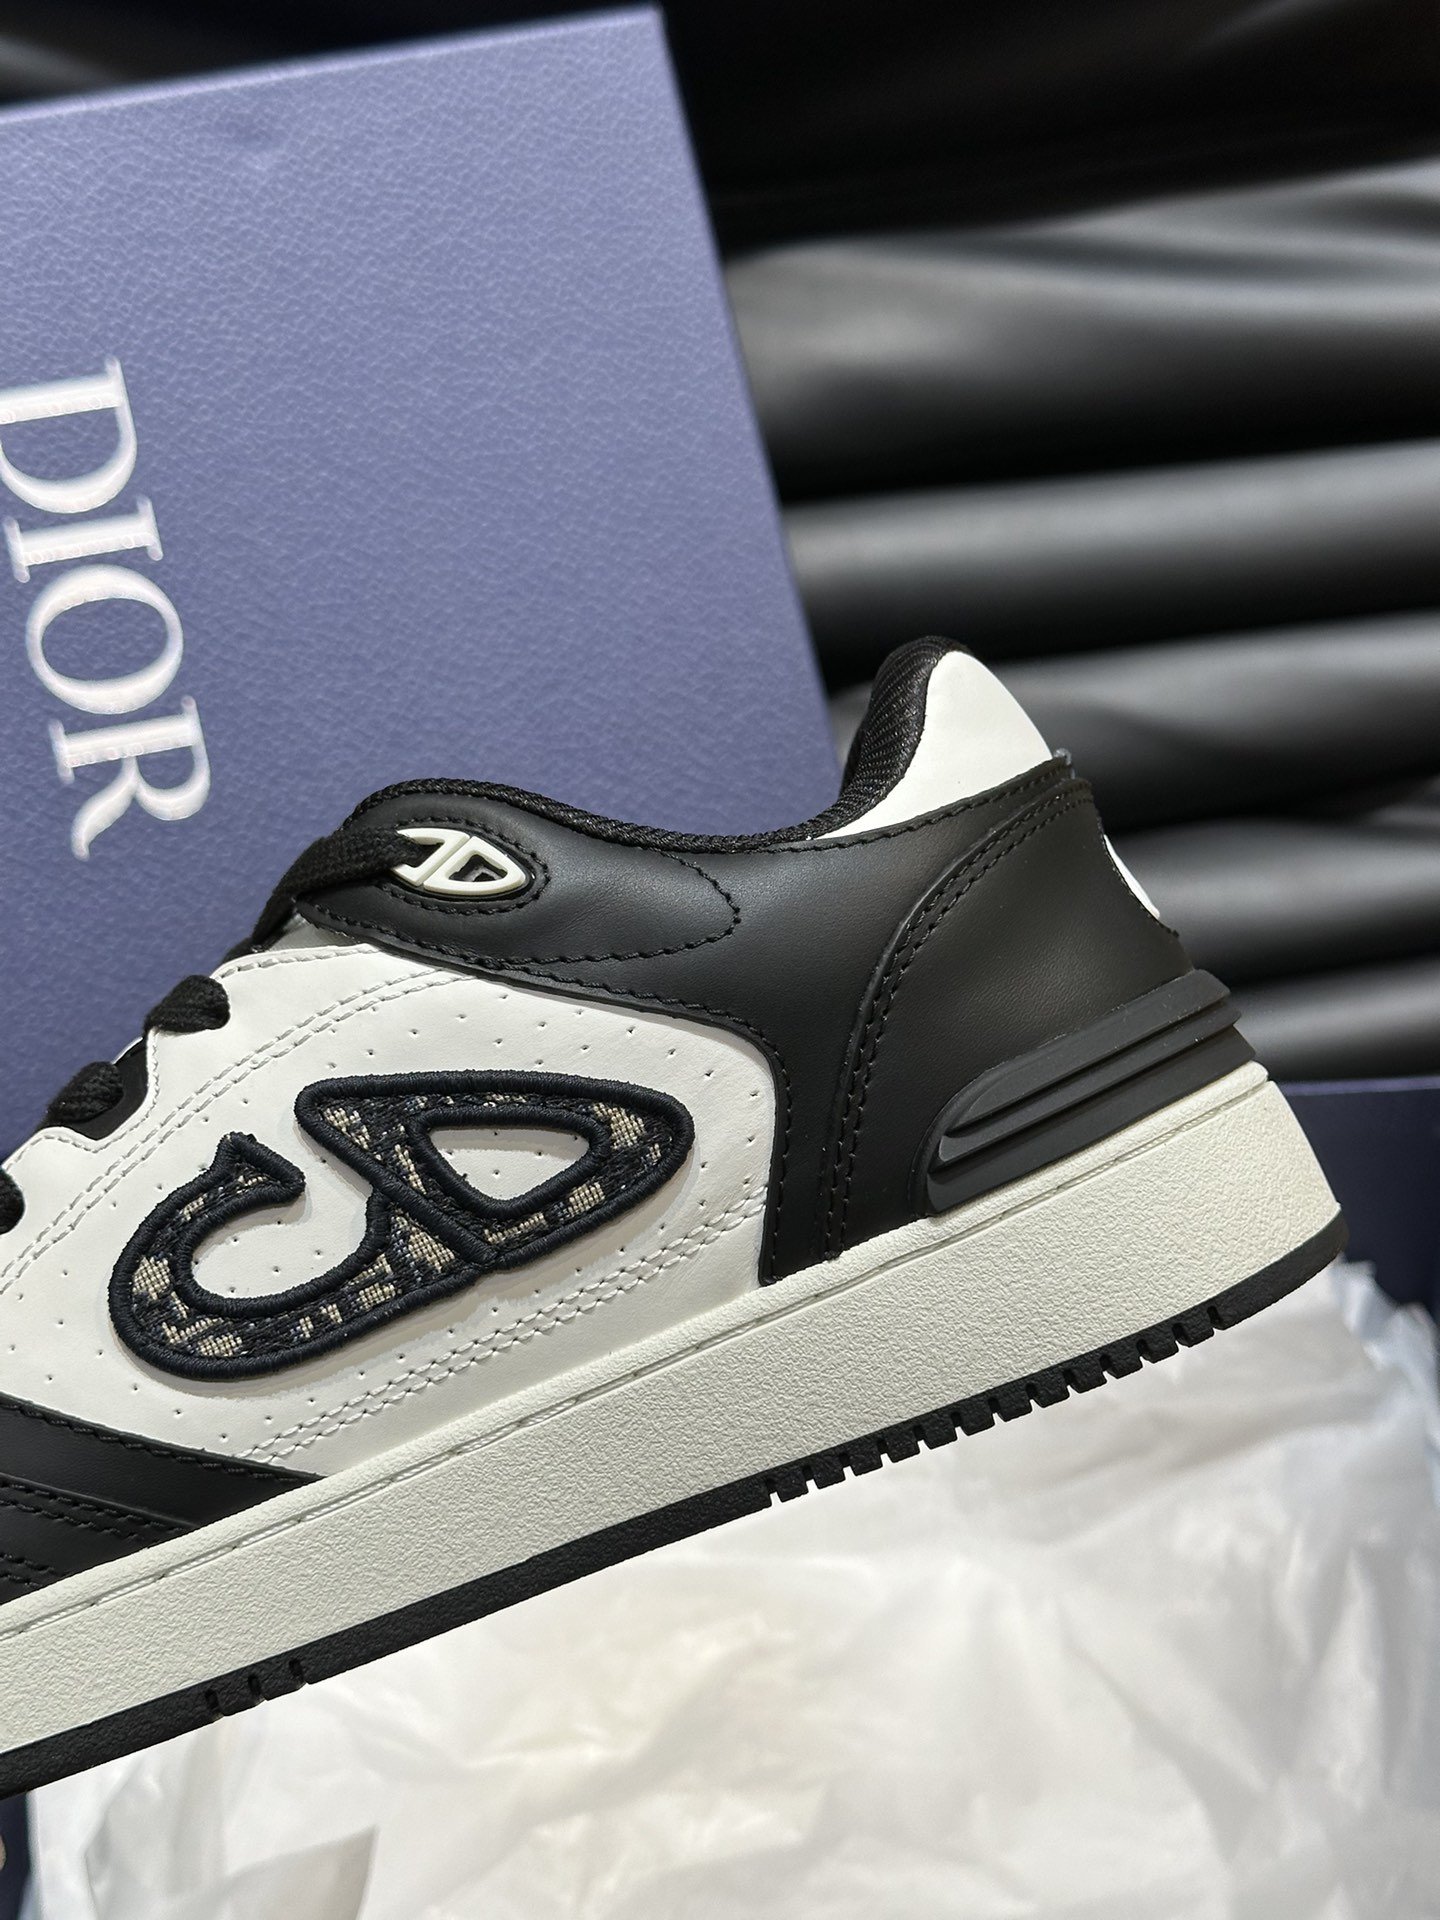 DIOB57情侣款低帮运动鞋出货这款B57低帮运动鞋是二零二四春季系列新品重新诠释篮球鞋设计成为Dior